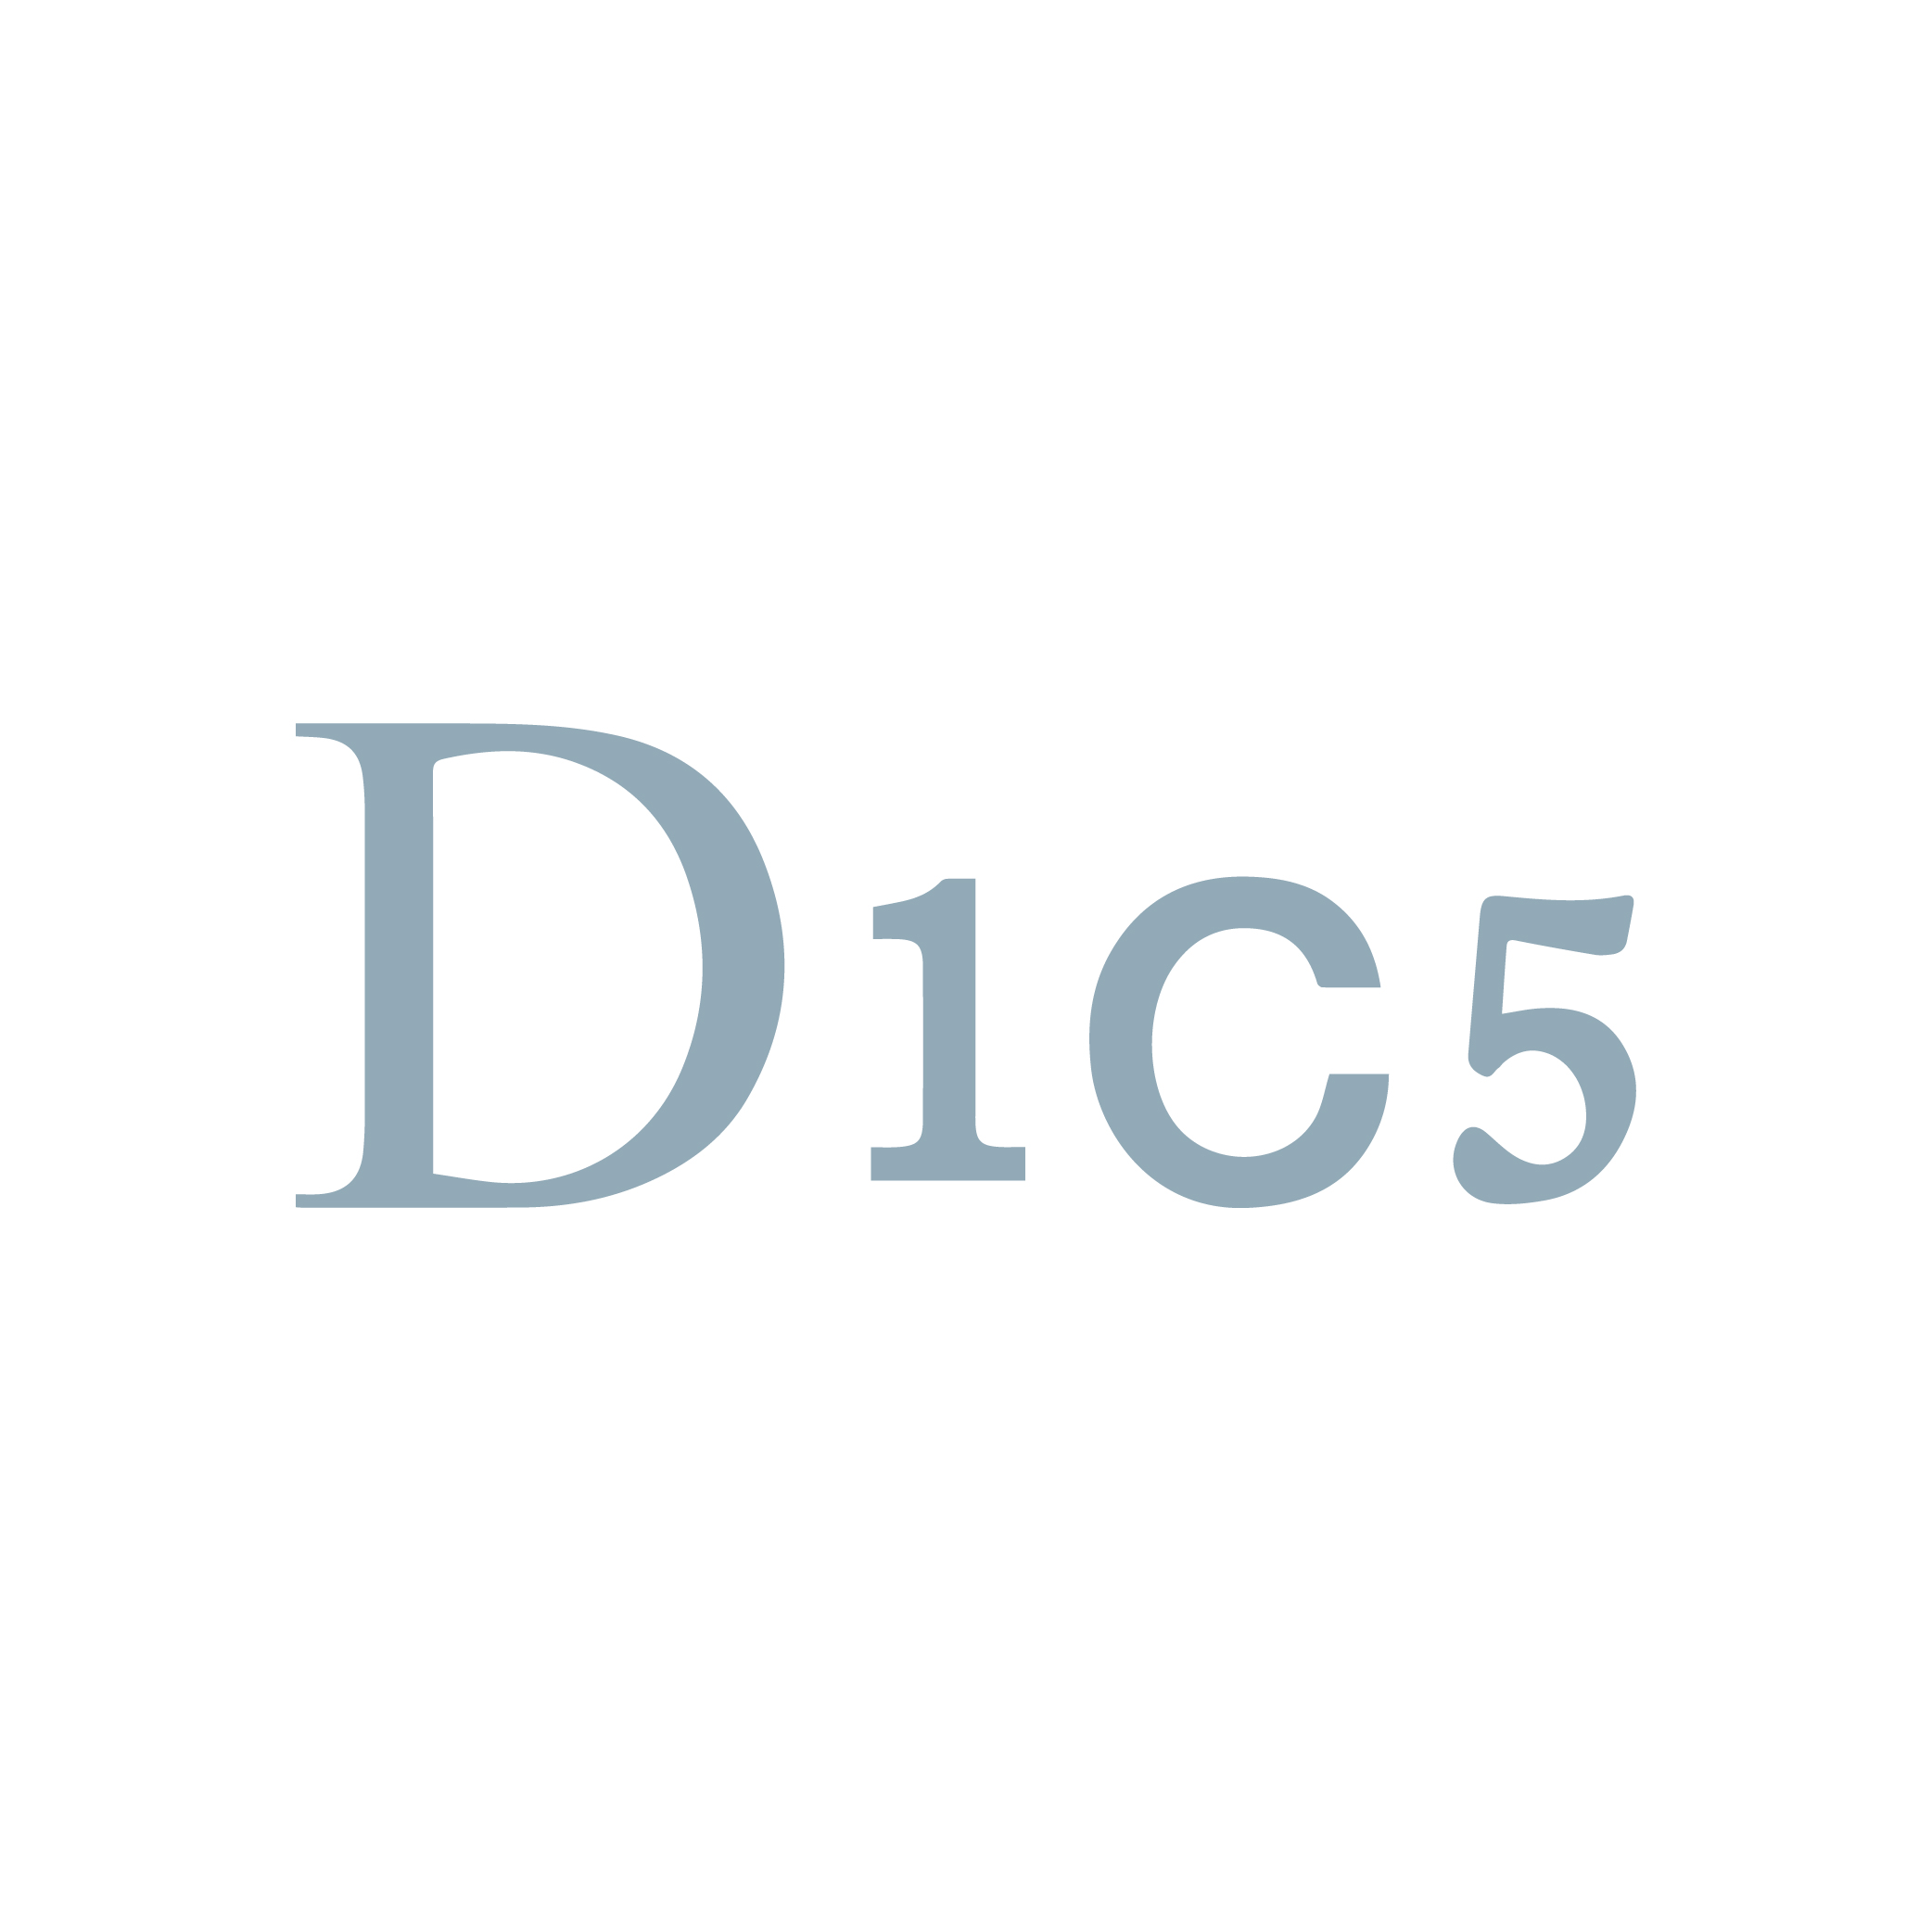 D1C5